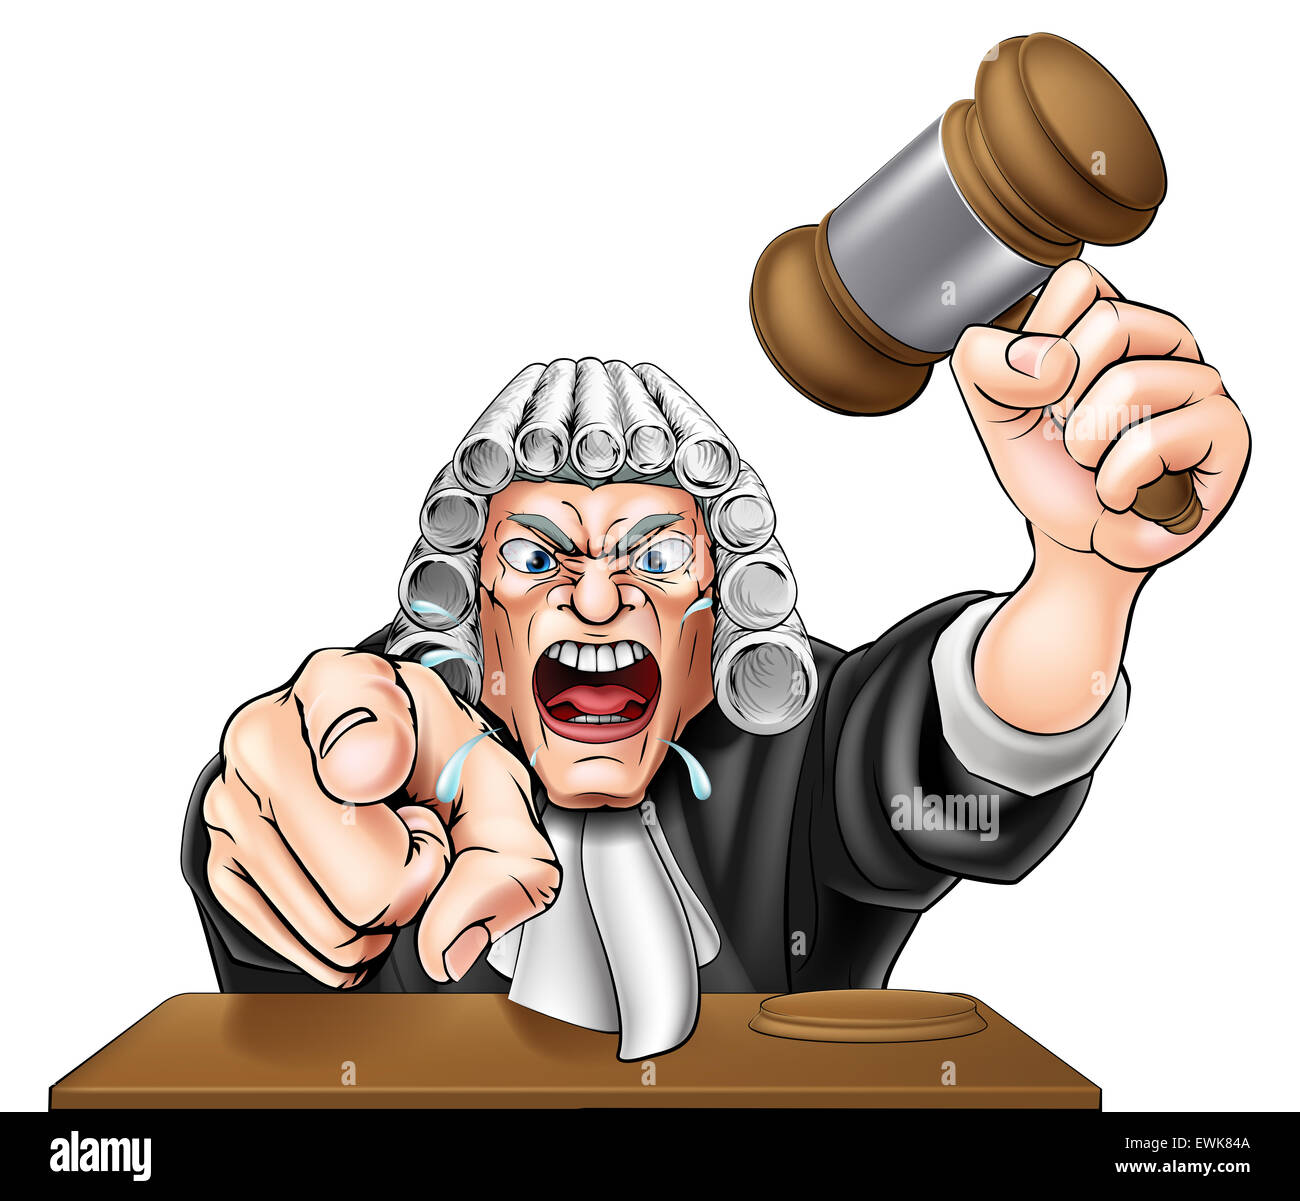 Una illustrazione di un giudice arrabbiato personaggio dei fumetti che urlava e puntando verso il visualizzatore Foto Stock